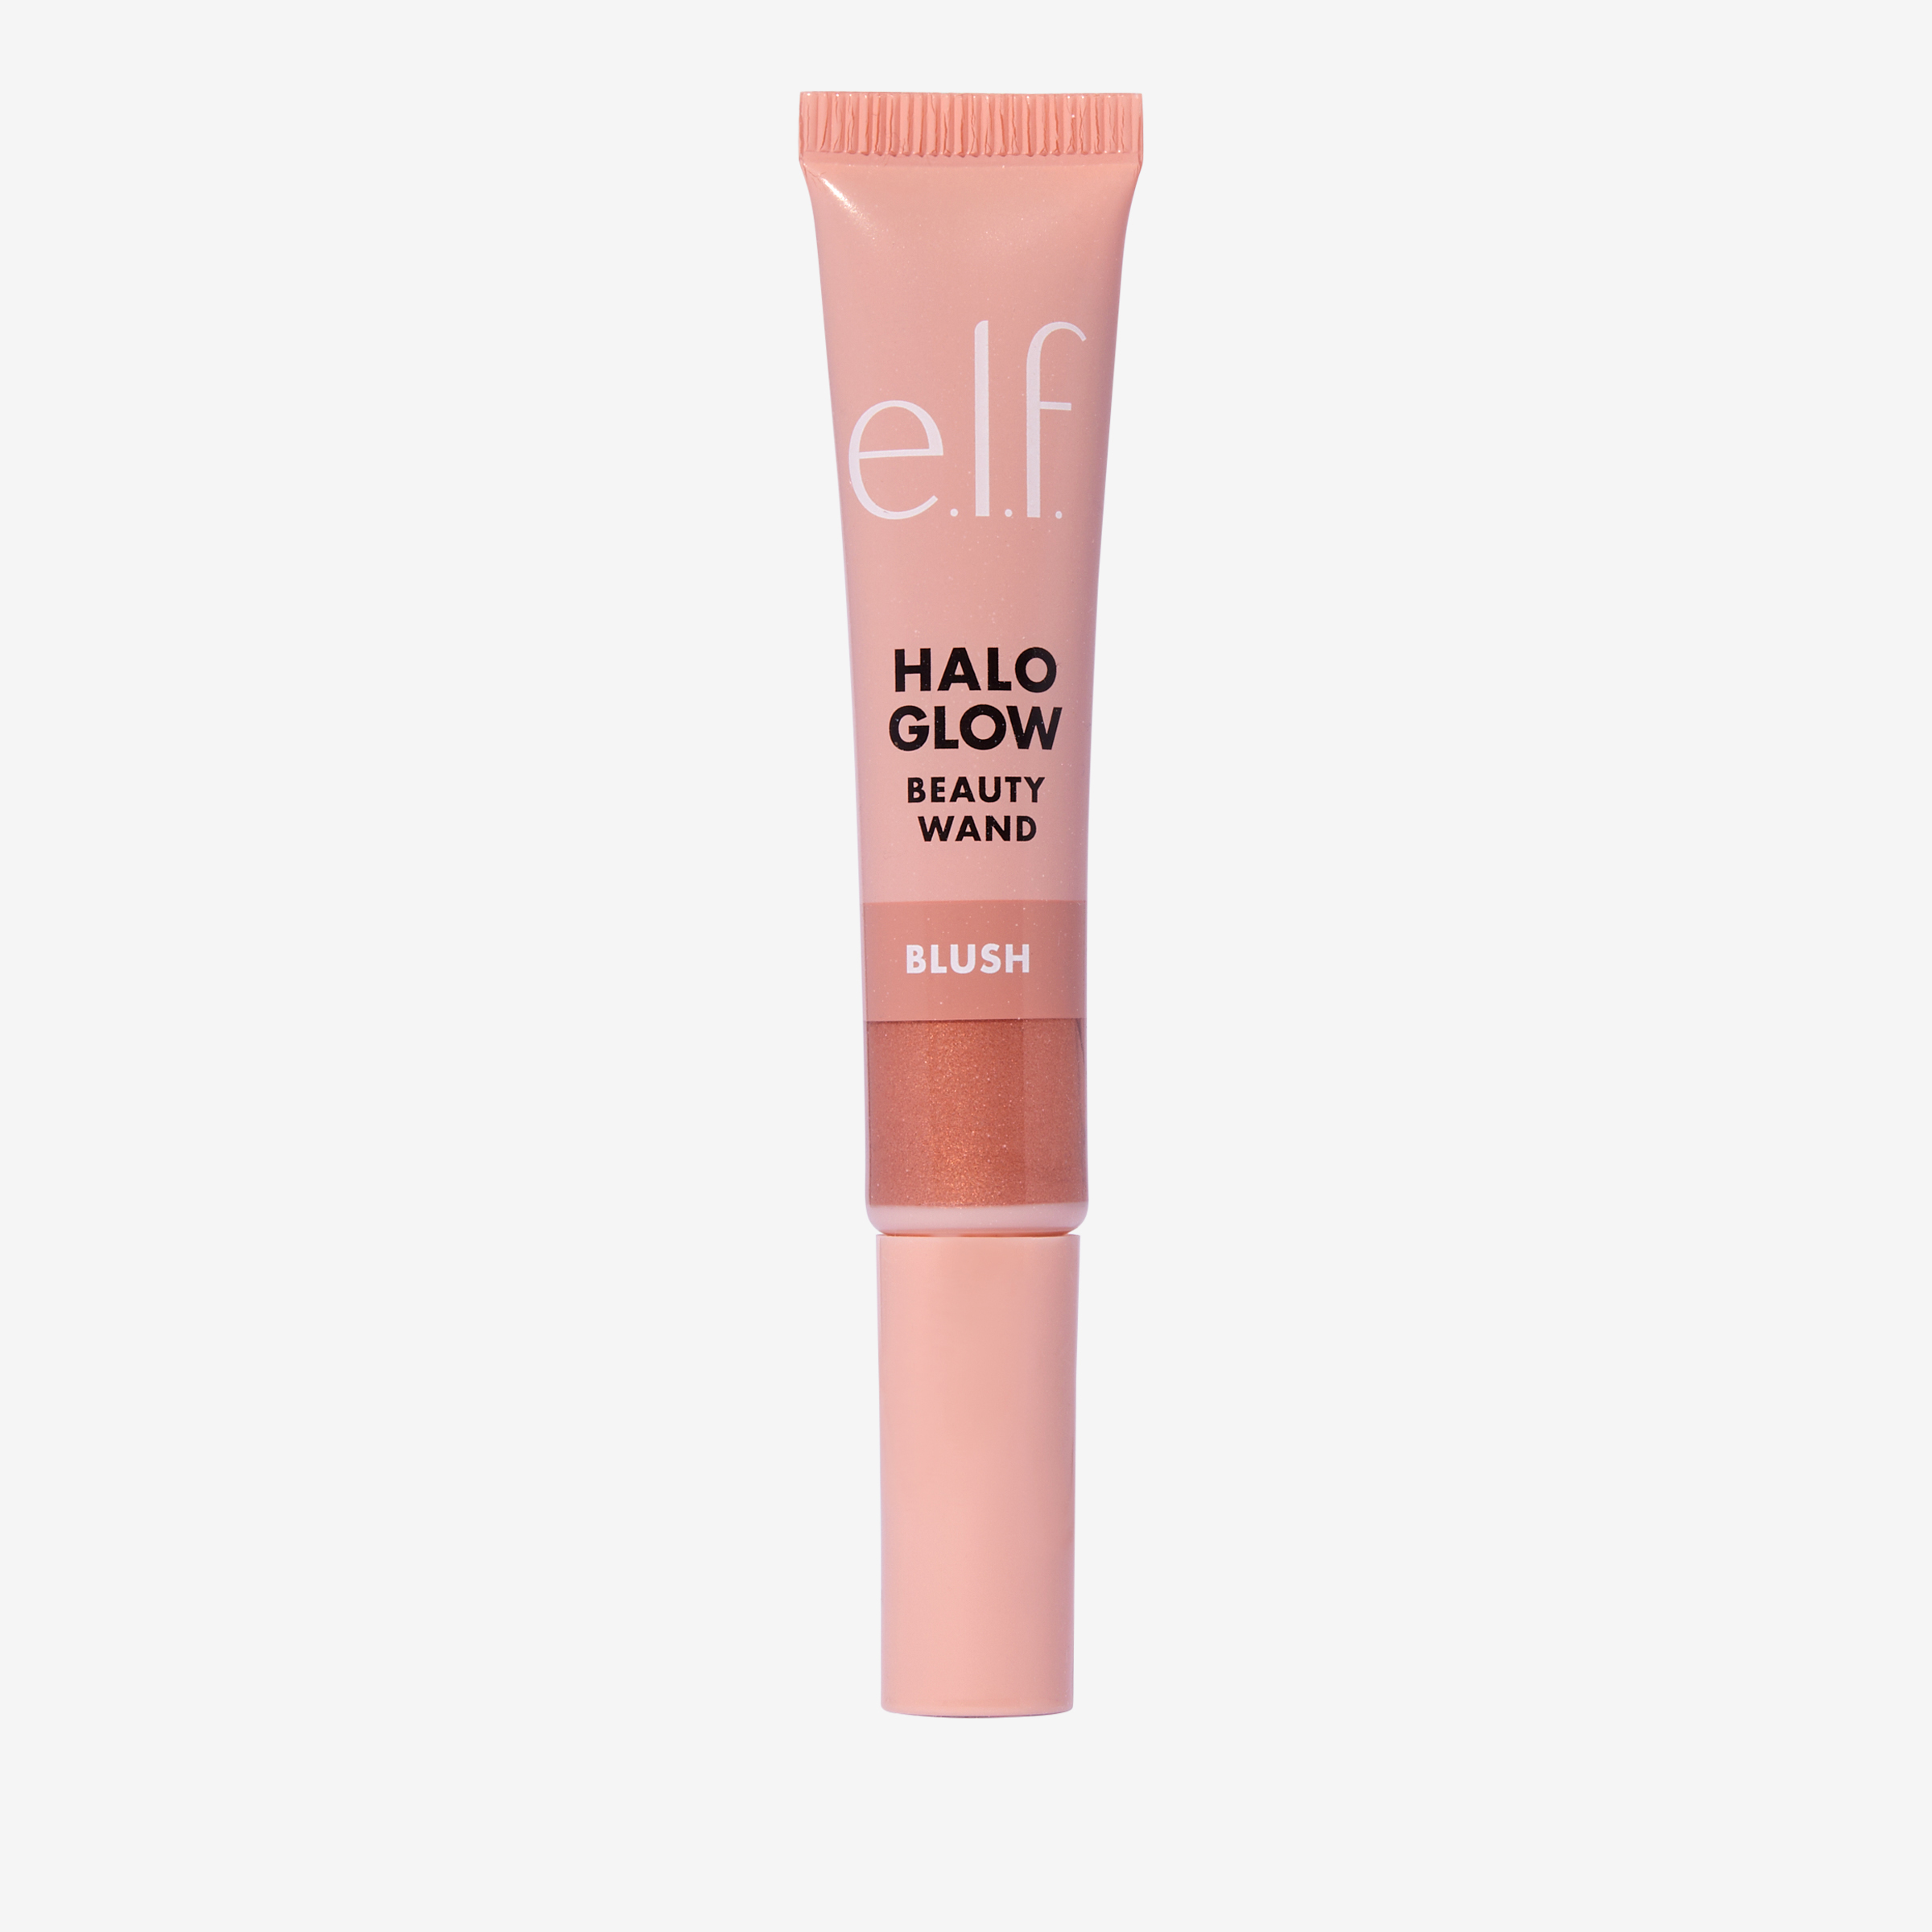 E.L.F. Halo Glow Blush Beauty Wand Candlelit